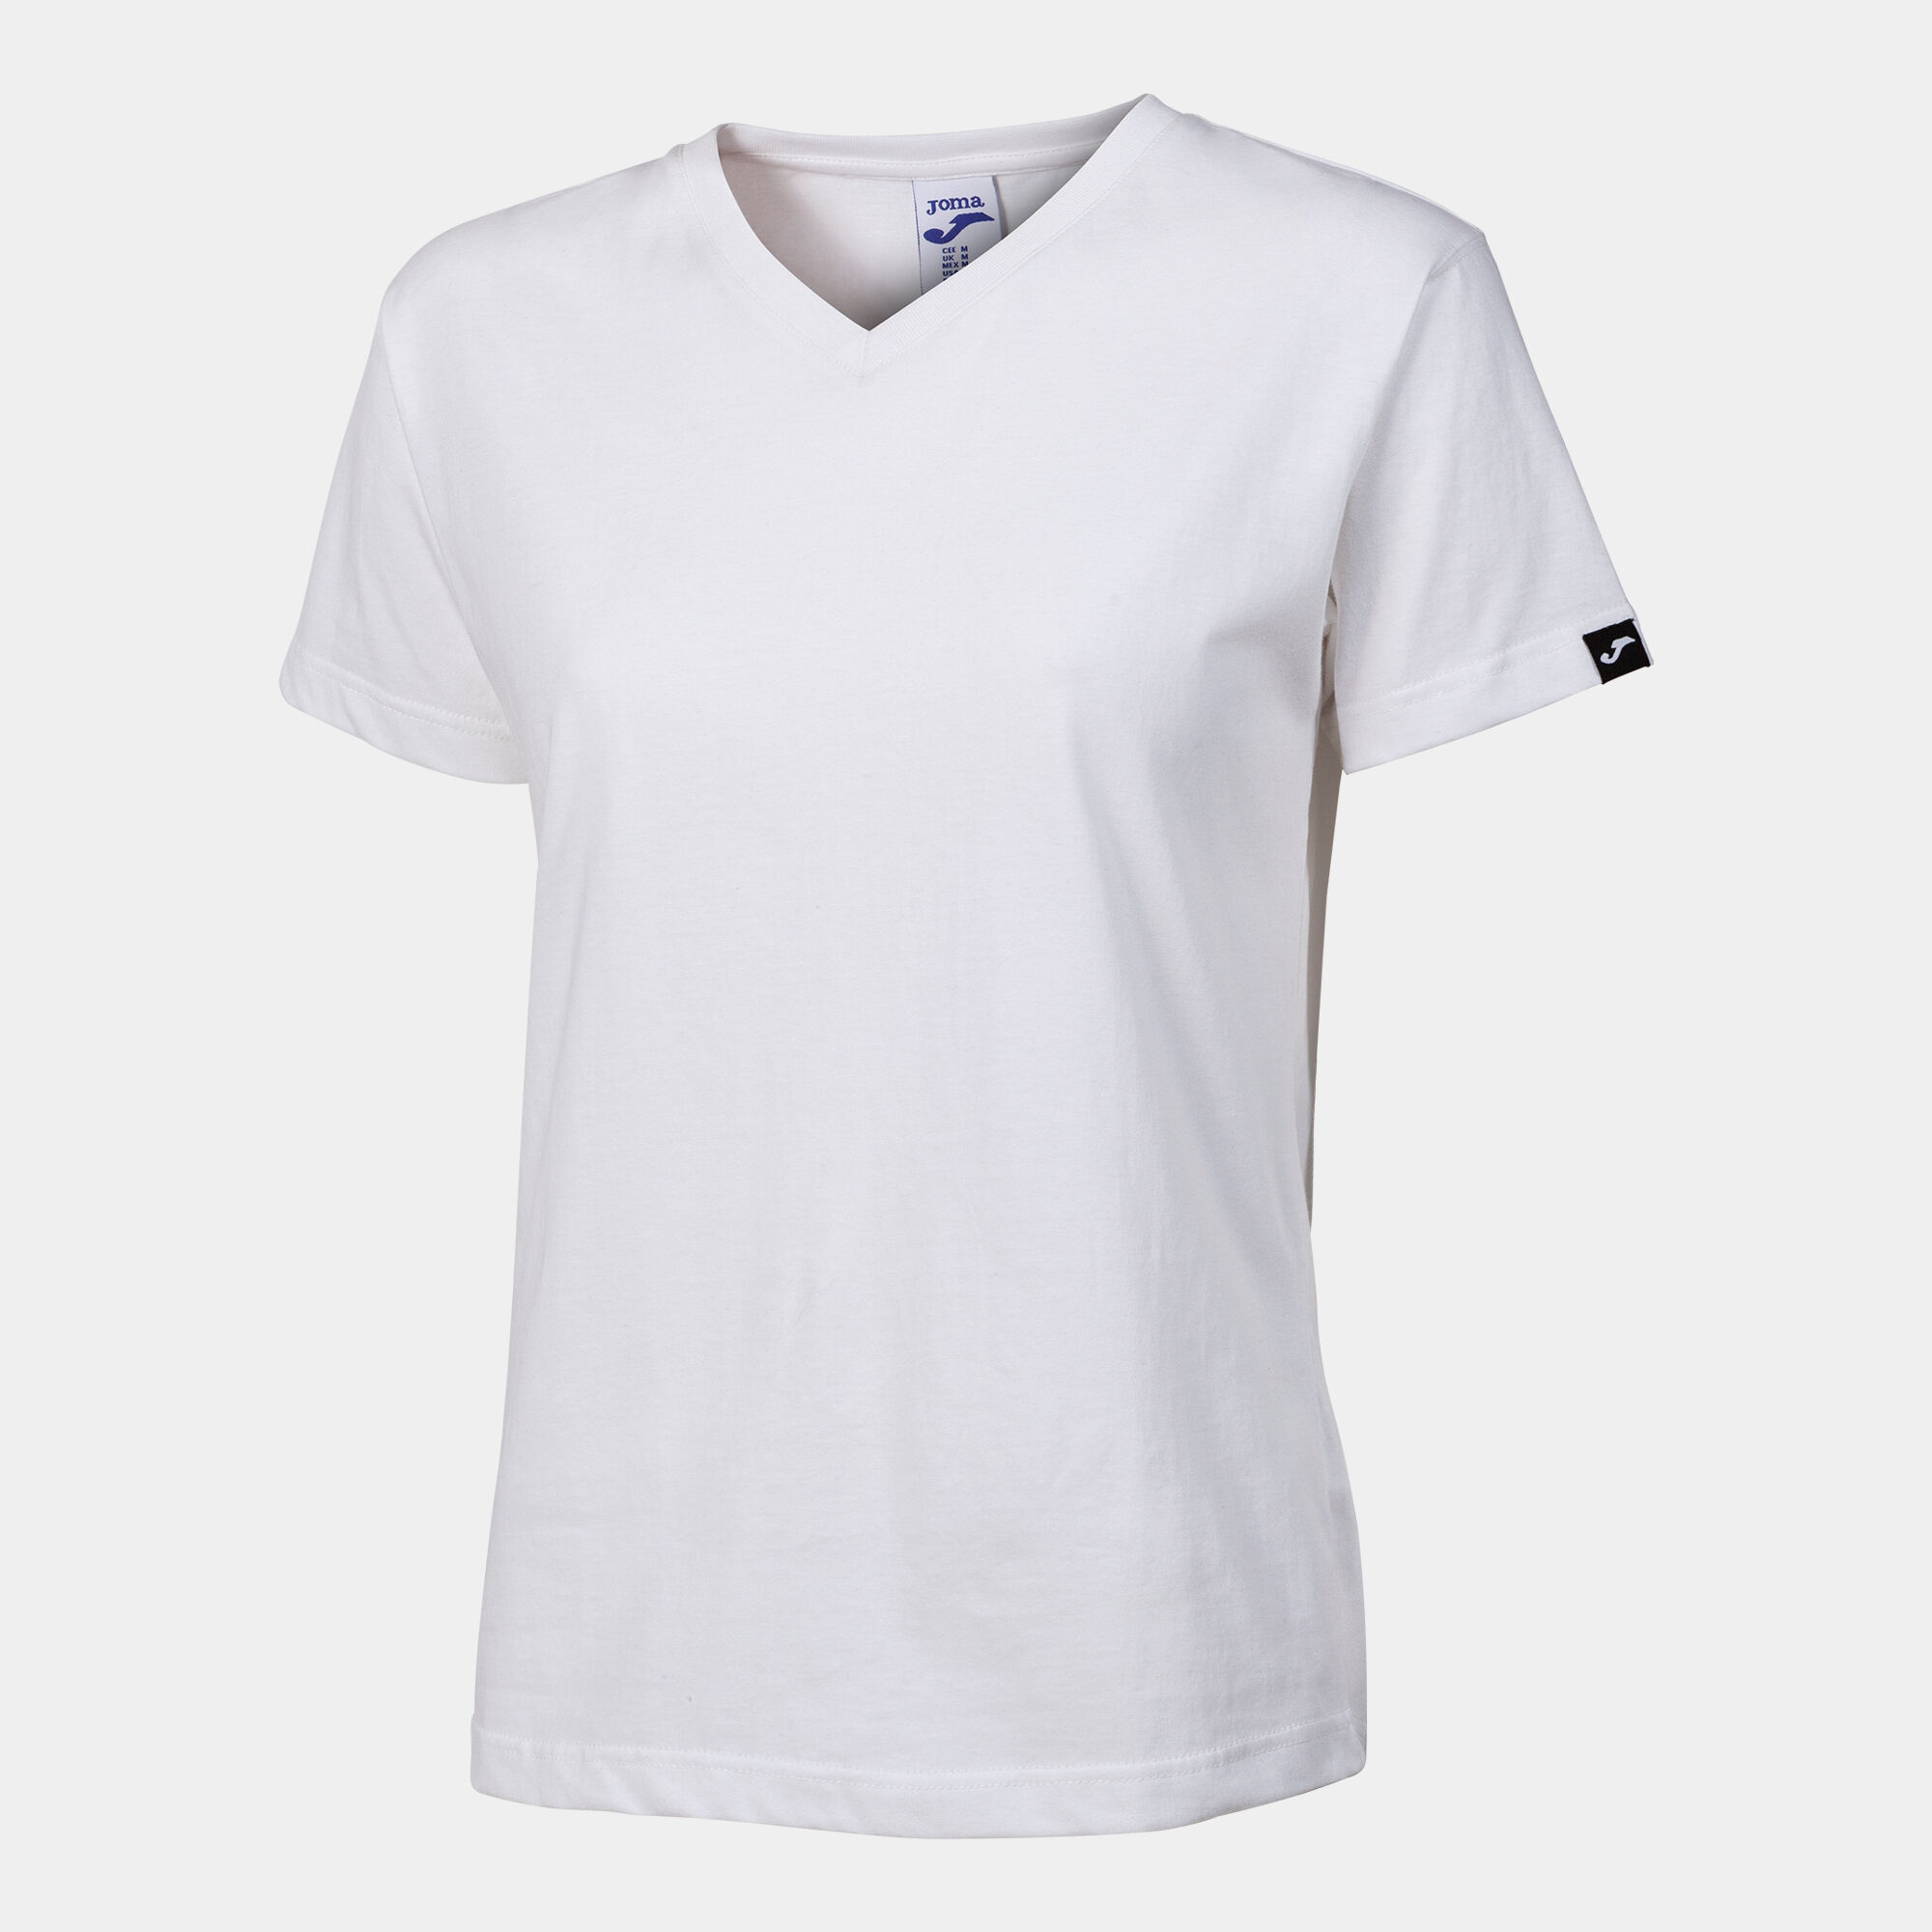 Camiseta manga corta mujer Versalles blanco